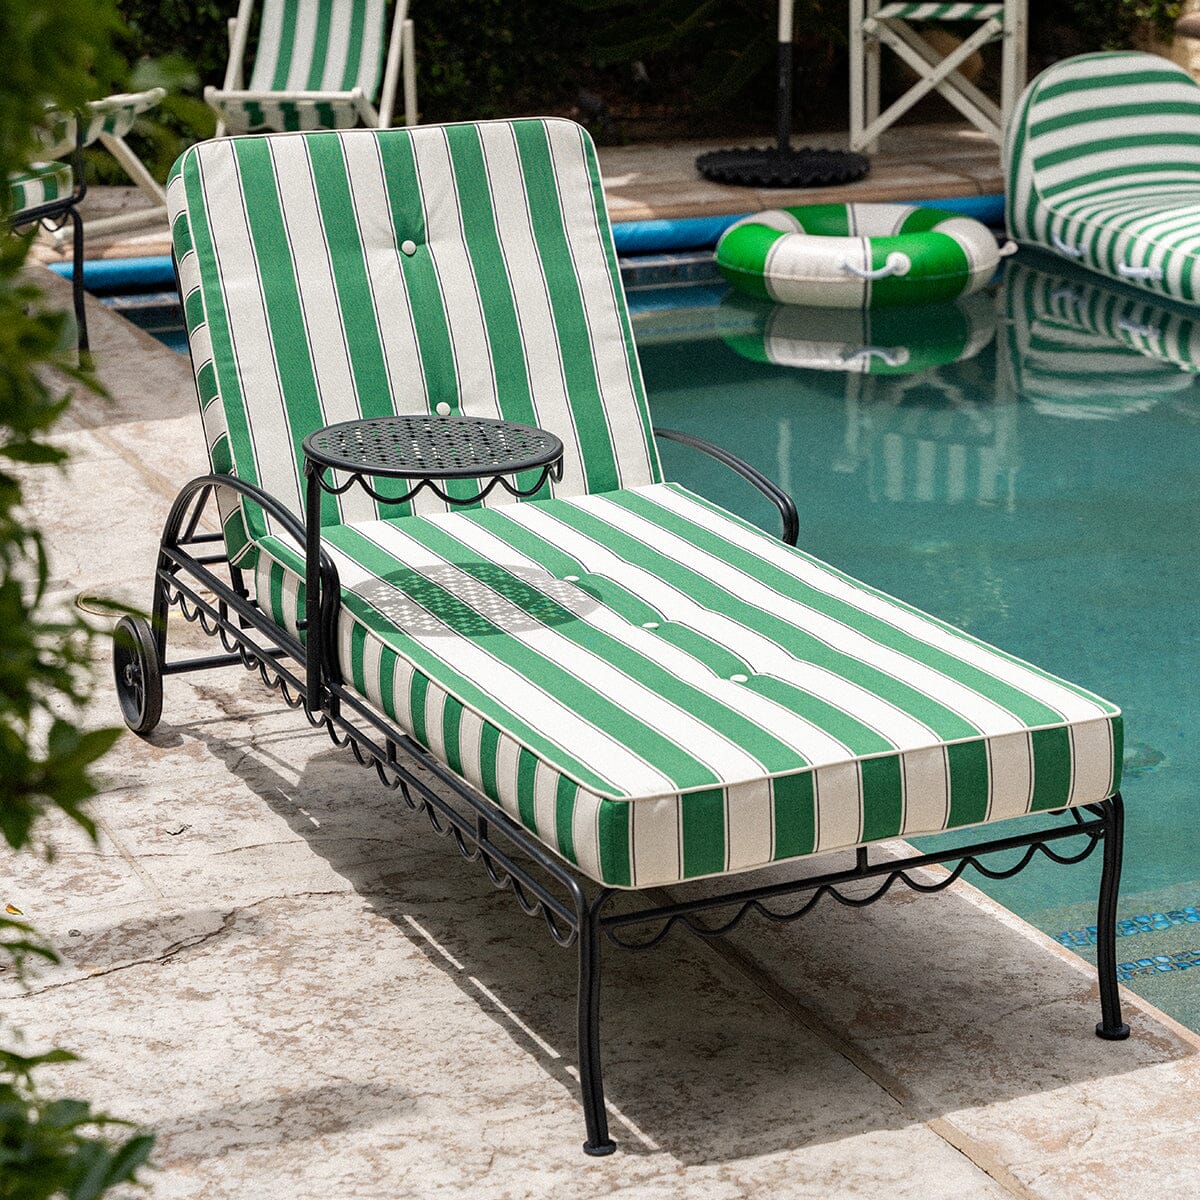 The Al Fresco Sun Lounger Cushion - STAUD Stripe Al Fresco Sun Lounger Cushions Business & Pleasure Co Aus 